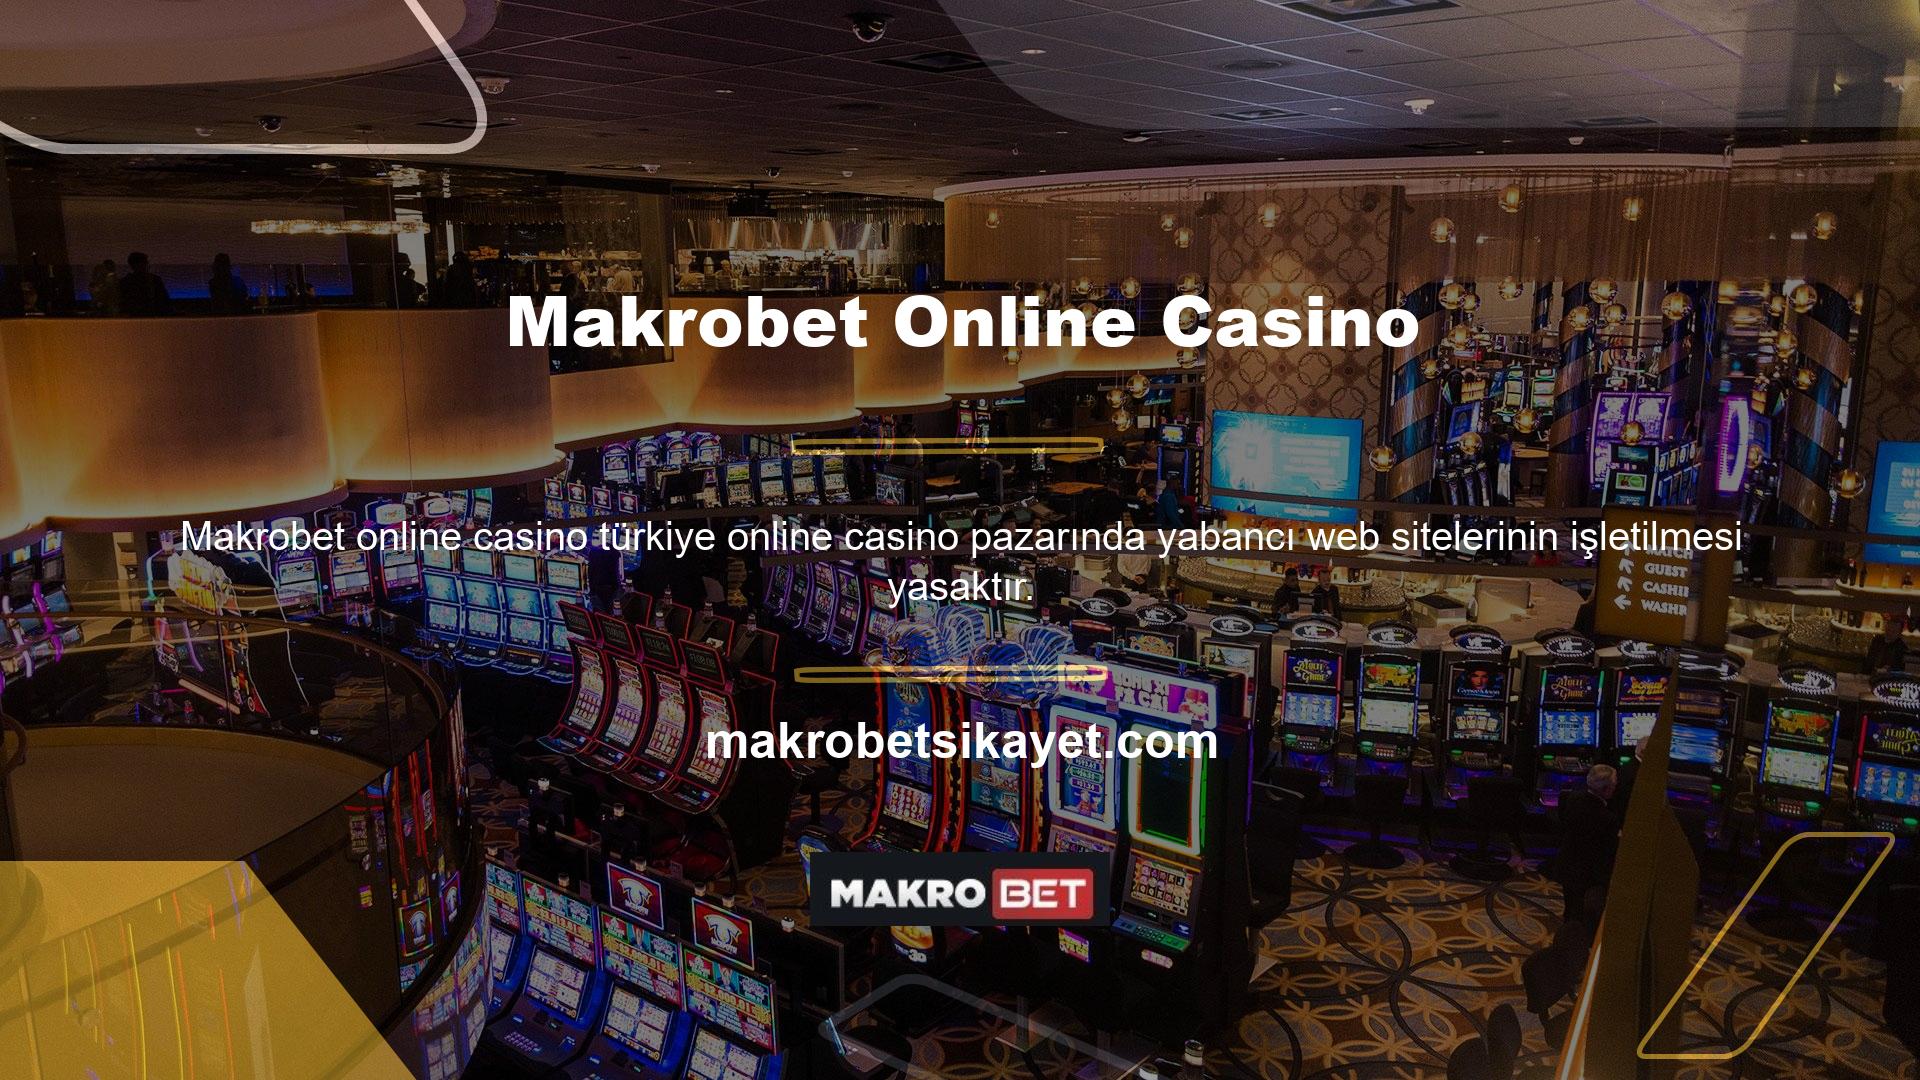 Makrobet, yabancı casino sitelerinden biridir ve bu nedenle yerel casino meraklılarına yasa dışı hizmetler sunmaktadır